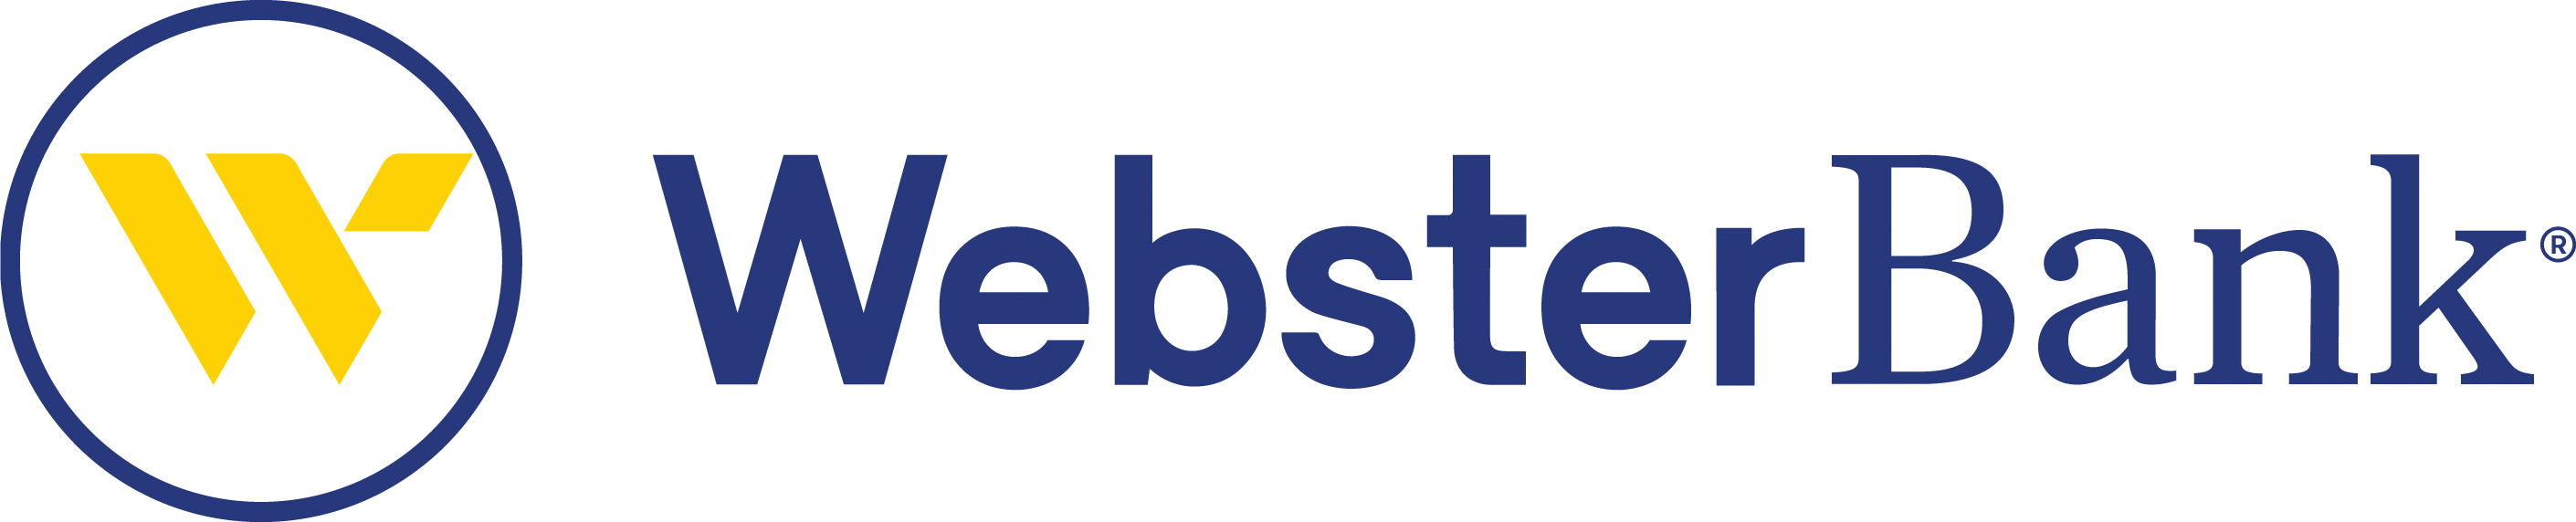 Webster Bank- Logo